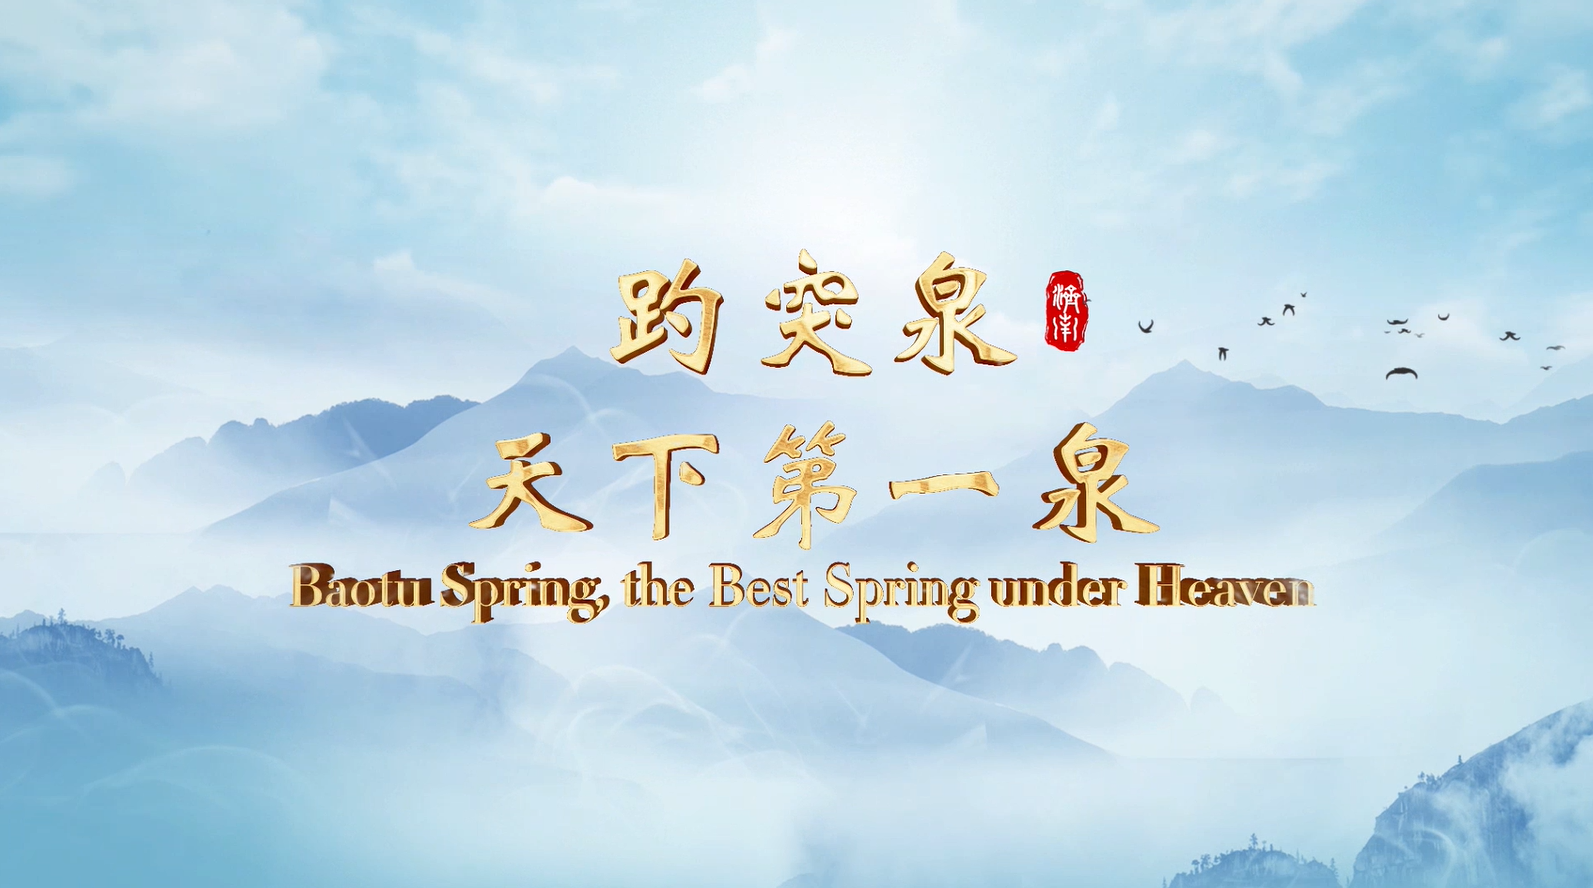 Episode I Baotu Spring, the Best Spring under Heaven